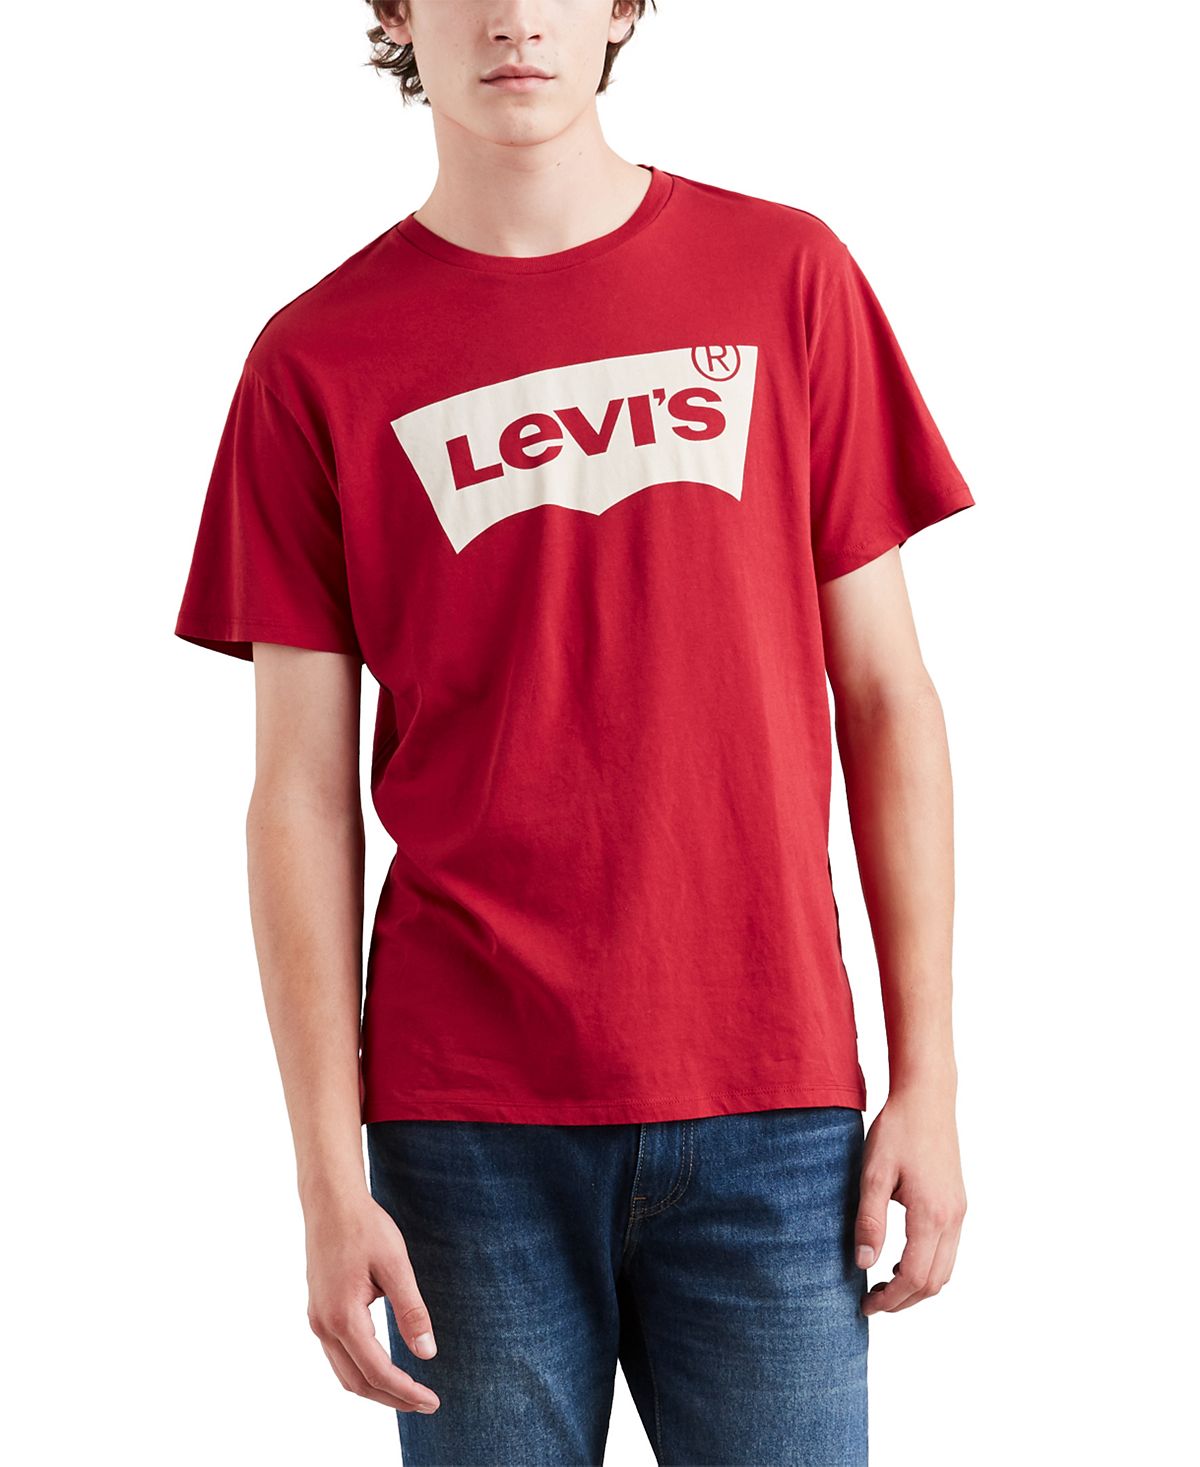 Мужская футболка с коротким рукавом и логотипом batwing Levi's 2022 f1 футболка мужская формула один водитель 33 verstappen печатная мужская и женская мужская футболка с коротким рукавом и логотипом super team